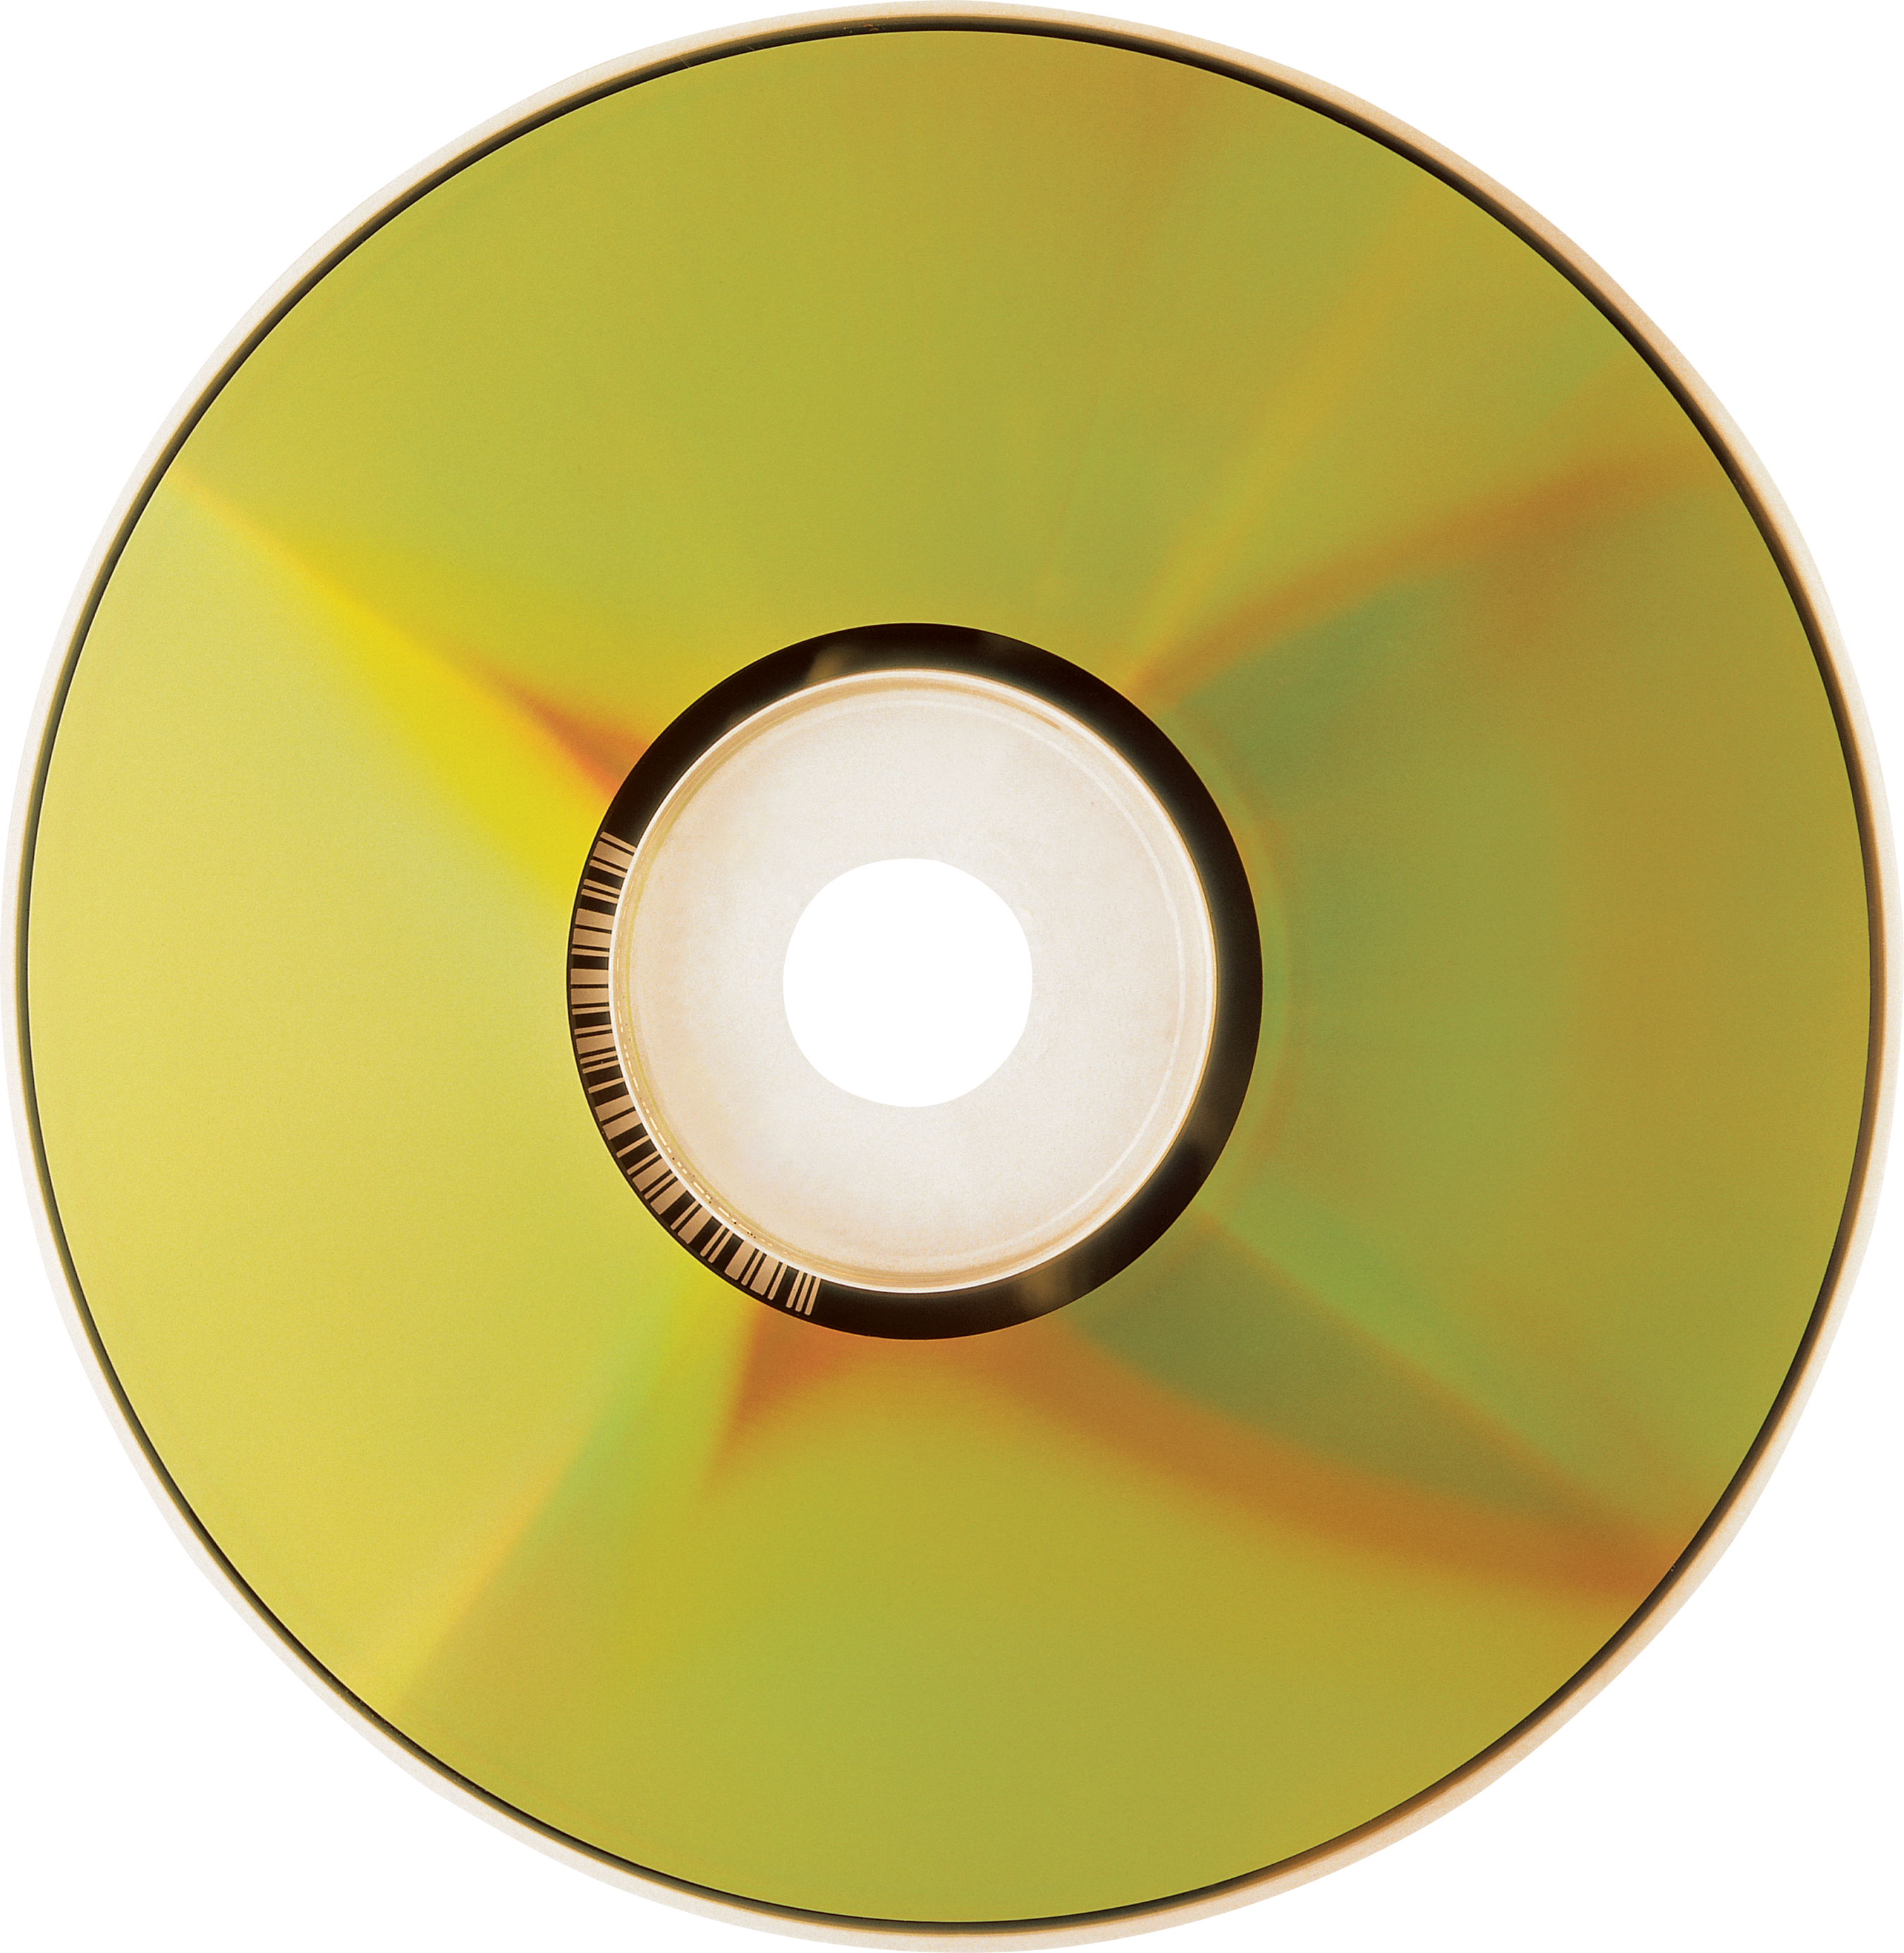 Компакт диск CD PNG